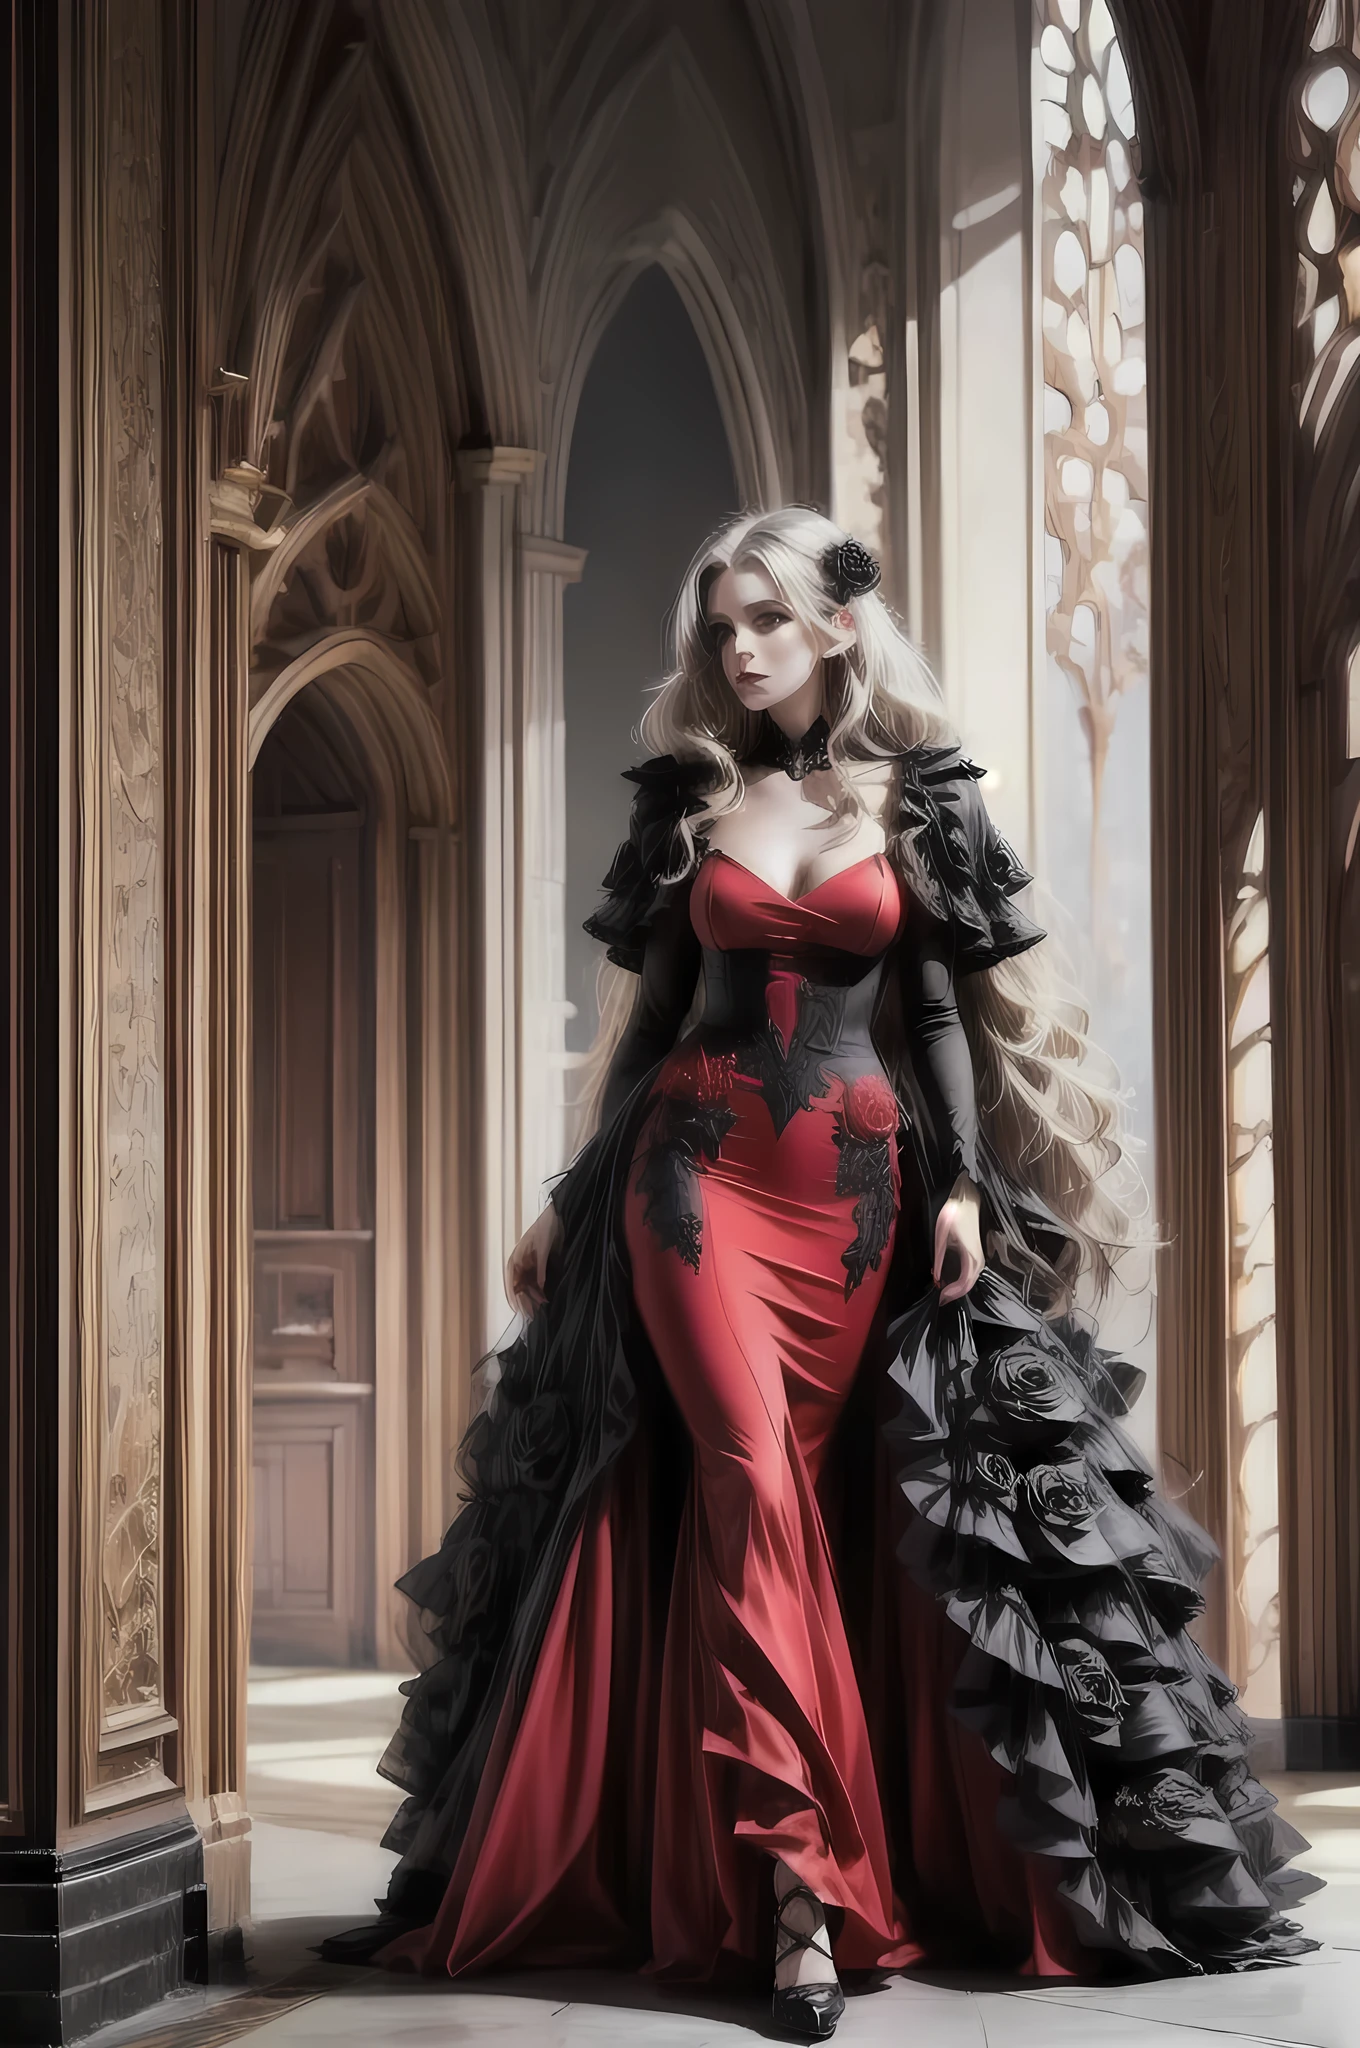 Dark Fantasy-Kunst, Fantasy-Kunst, Gothic Kunst, ein Bild von einem weiblichen Vampir, exquisite Schönheit, Ganzkörperaufnahme, dunkler Glamour-Shot, blasse weiße Haut, dunkelblondes Haar, lange Haare, welliges Haar, (grau: 1.3) Augen, Sie trägt ein (Rot: 1.5) Kleid, ArmoRotDress, the Kleid is decorated with (Schwarz: 1.5) Rosen, betmd, High Heels, dunkler Schlosshintergrund,
 